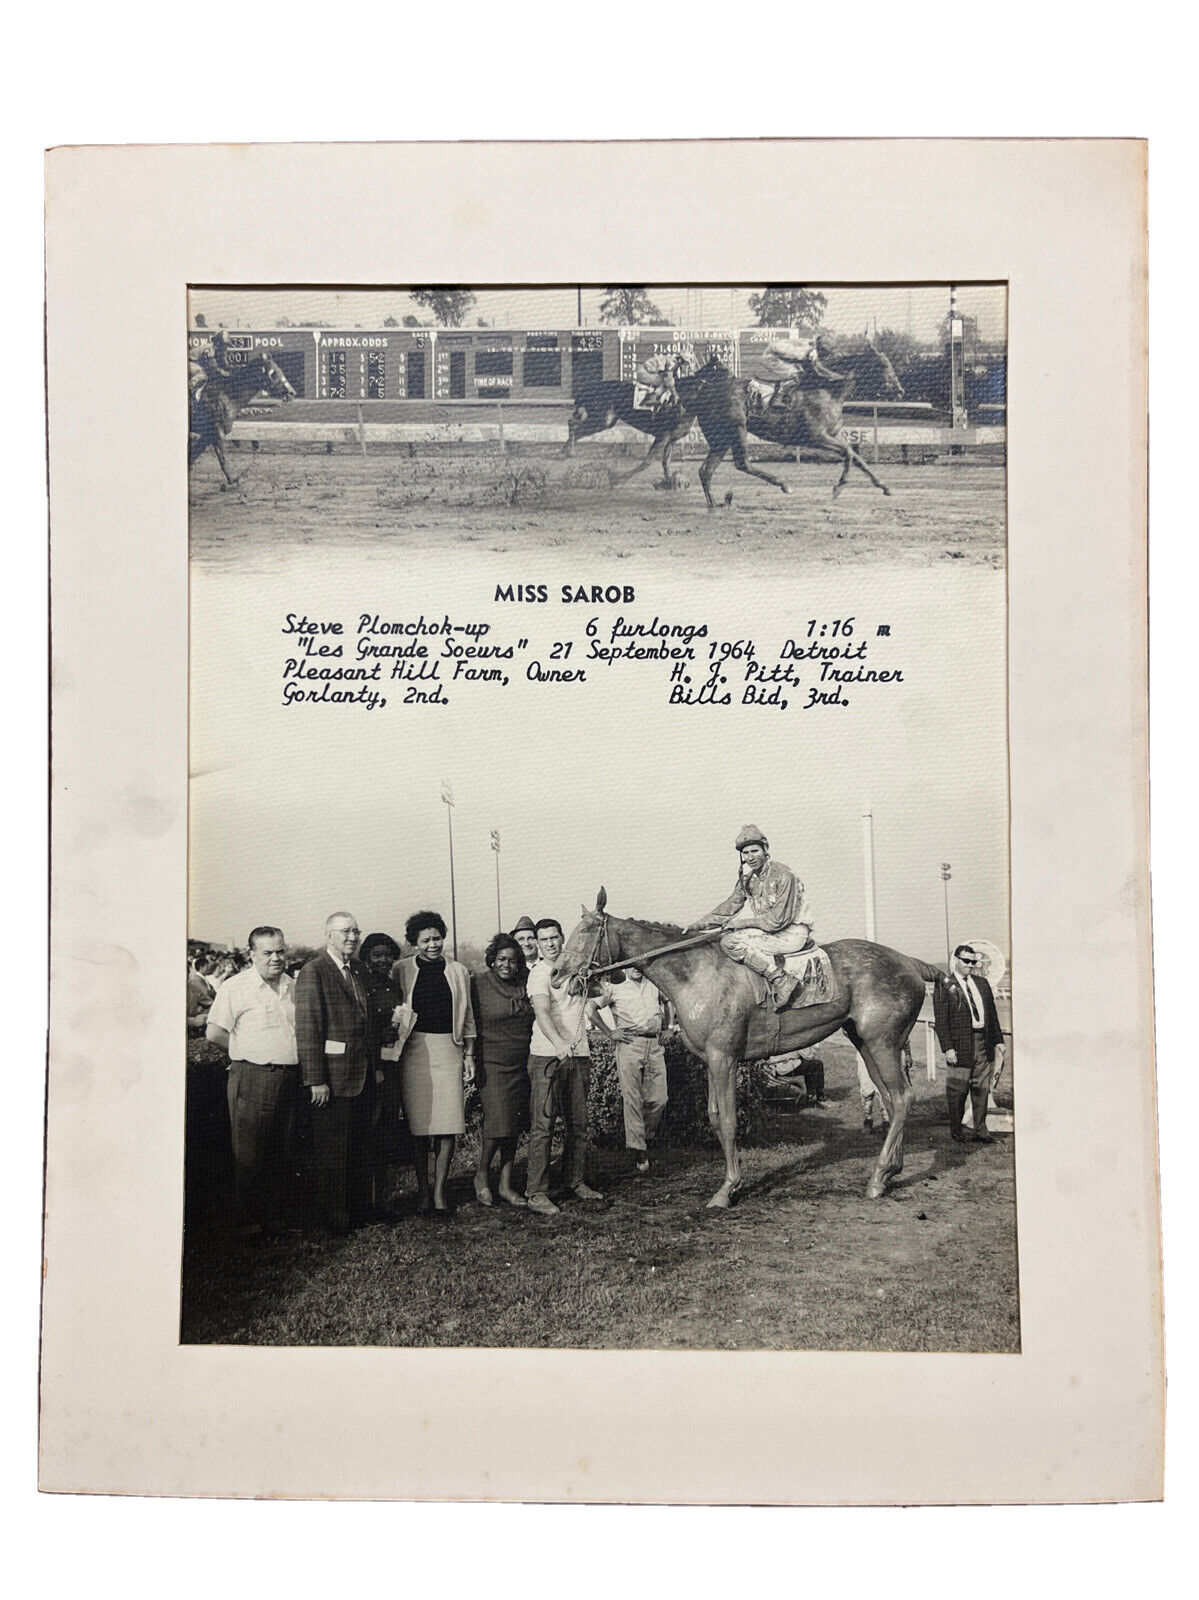 Rare Turfotos Horse Racing Sept 1964 “Miss Sarob” 11”x14” Mounted Photograph